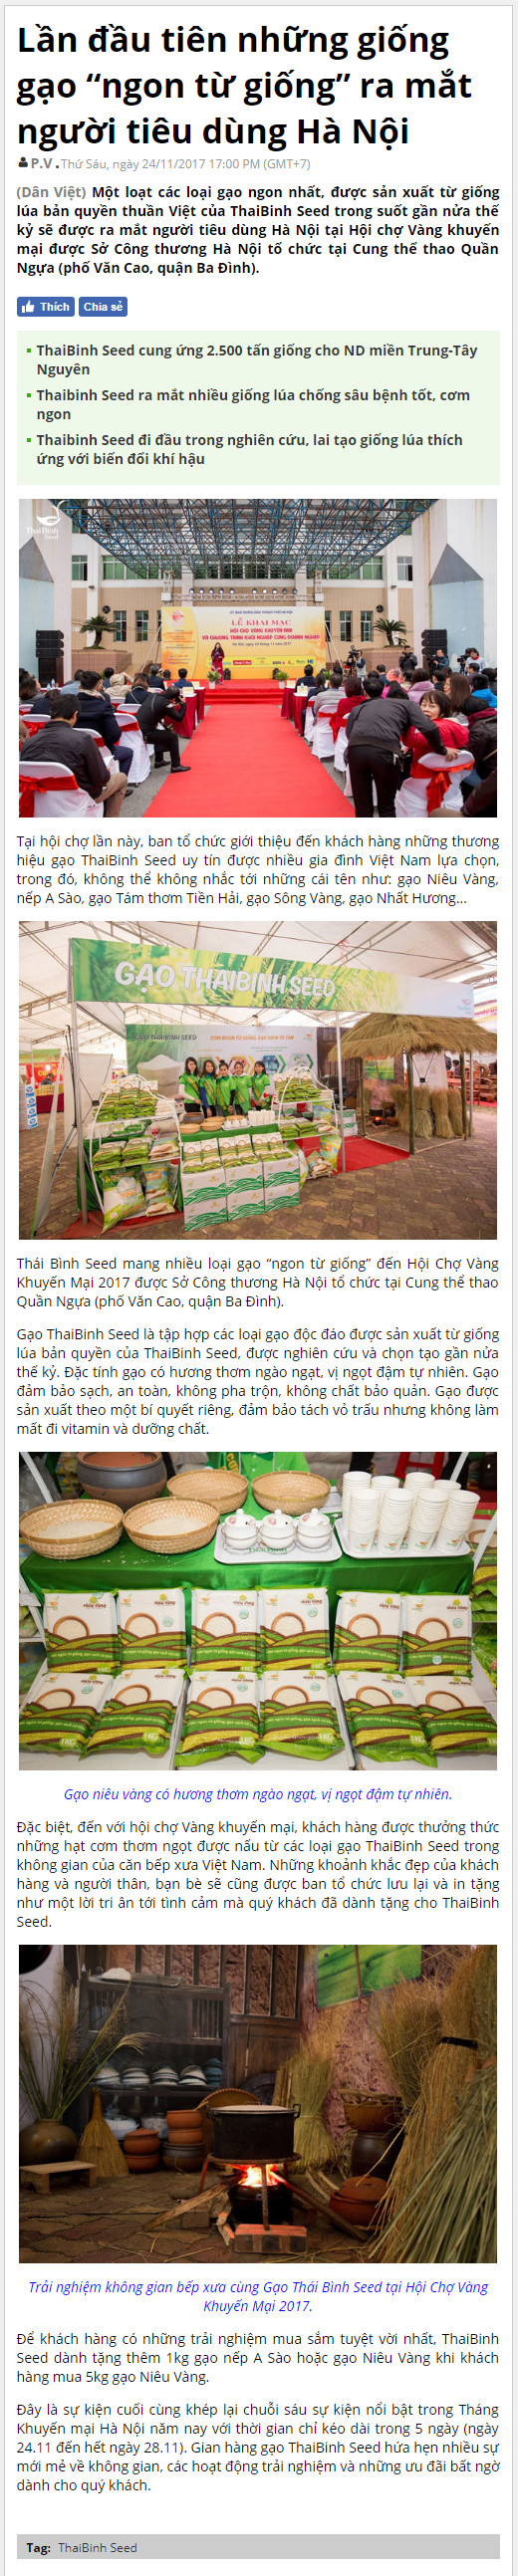 Sự kiện ra mắt loại gạo sạch nguyên chất lên báo Dân Việt bao-chi-noi-ve-nieu-vang 